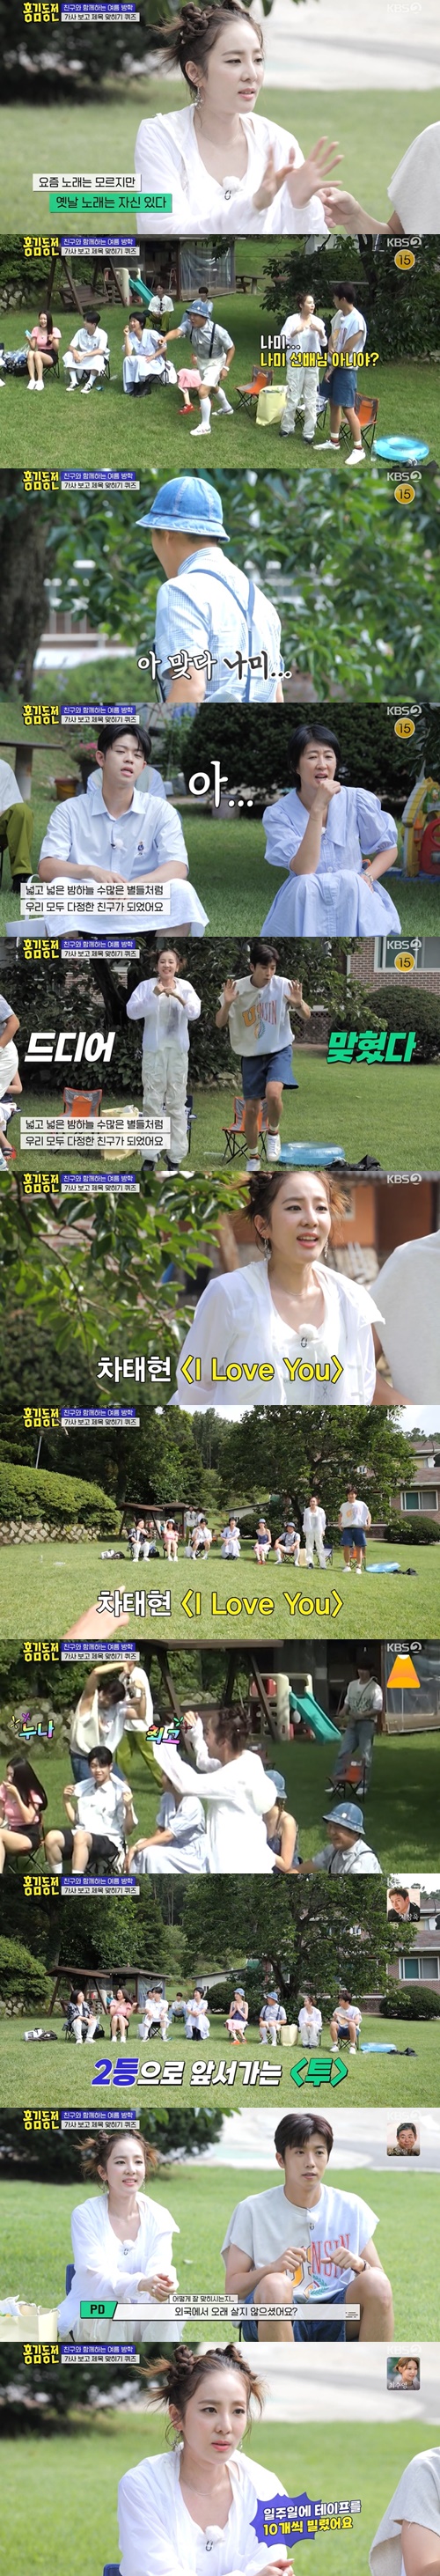 ‘홍김동전’ 산다라박 사진=KBS2 예능프로그램 ‘홍김동전’ 캡처